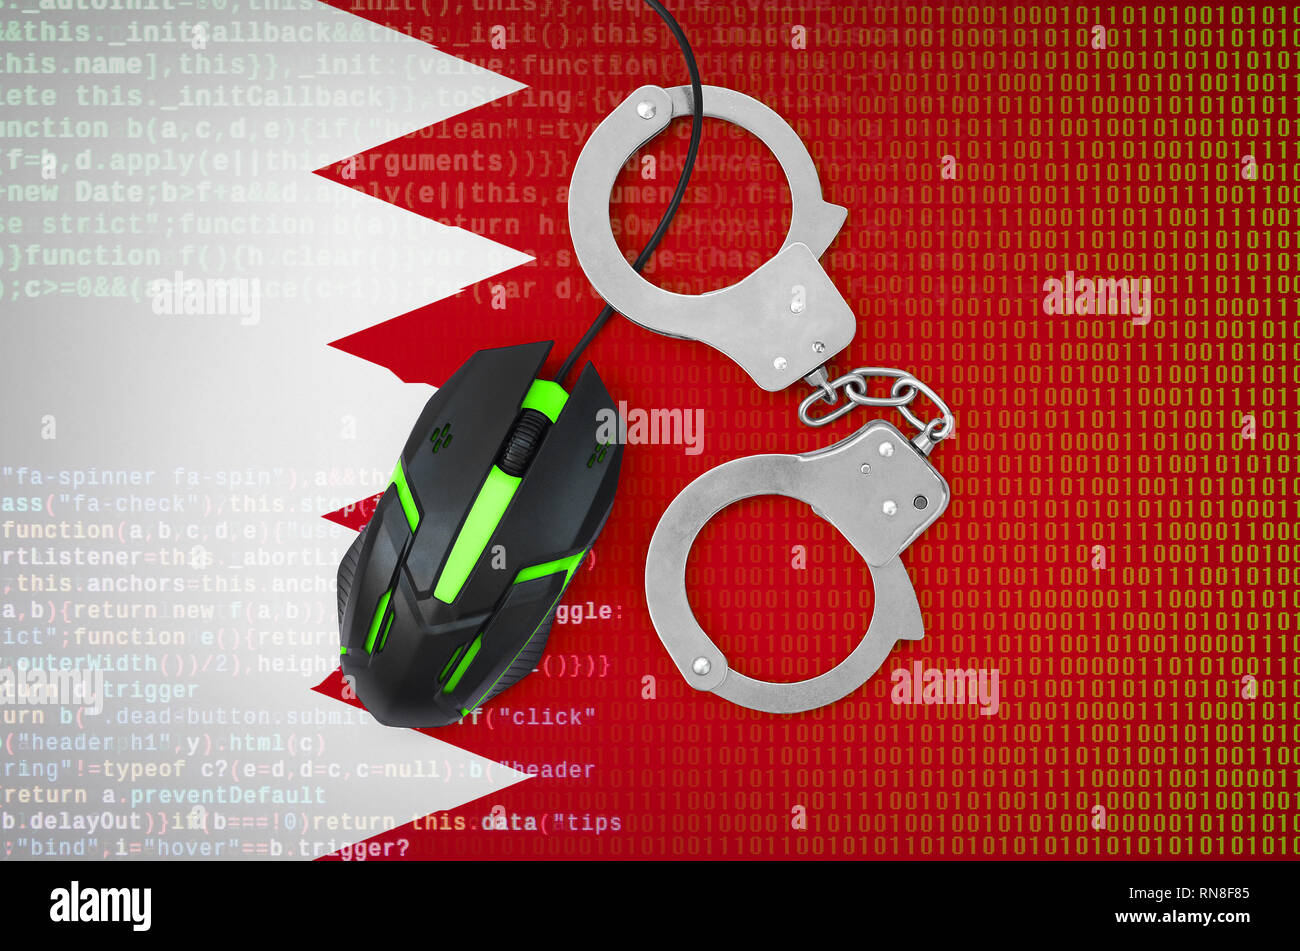 Drapeau de Bahreïn et menotté rétroéclairé moderne souris d'ordinateur. Concept créatif de lutte contre la criminalité informatique, les pirates et la piraterie Banque D'Images